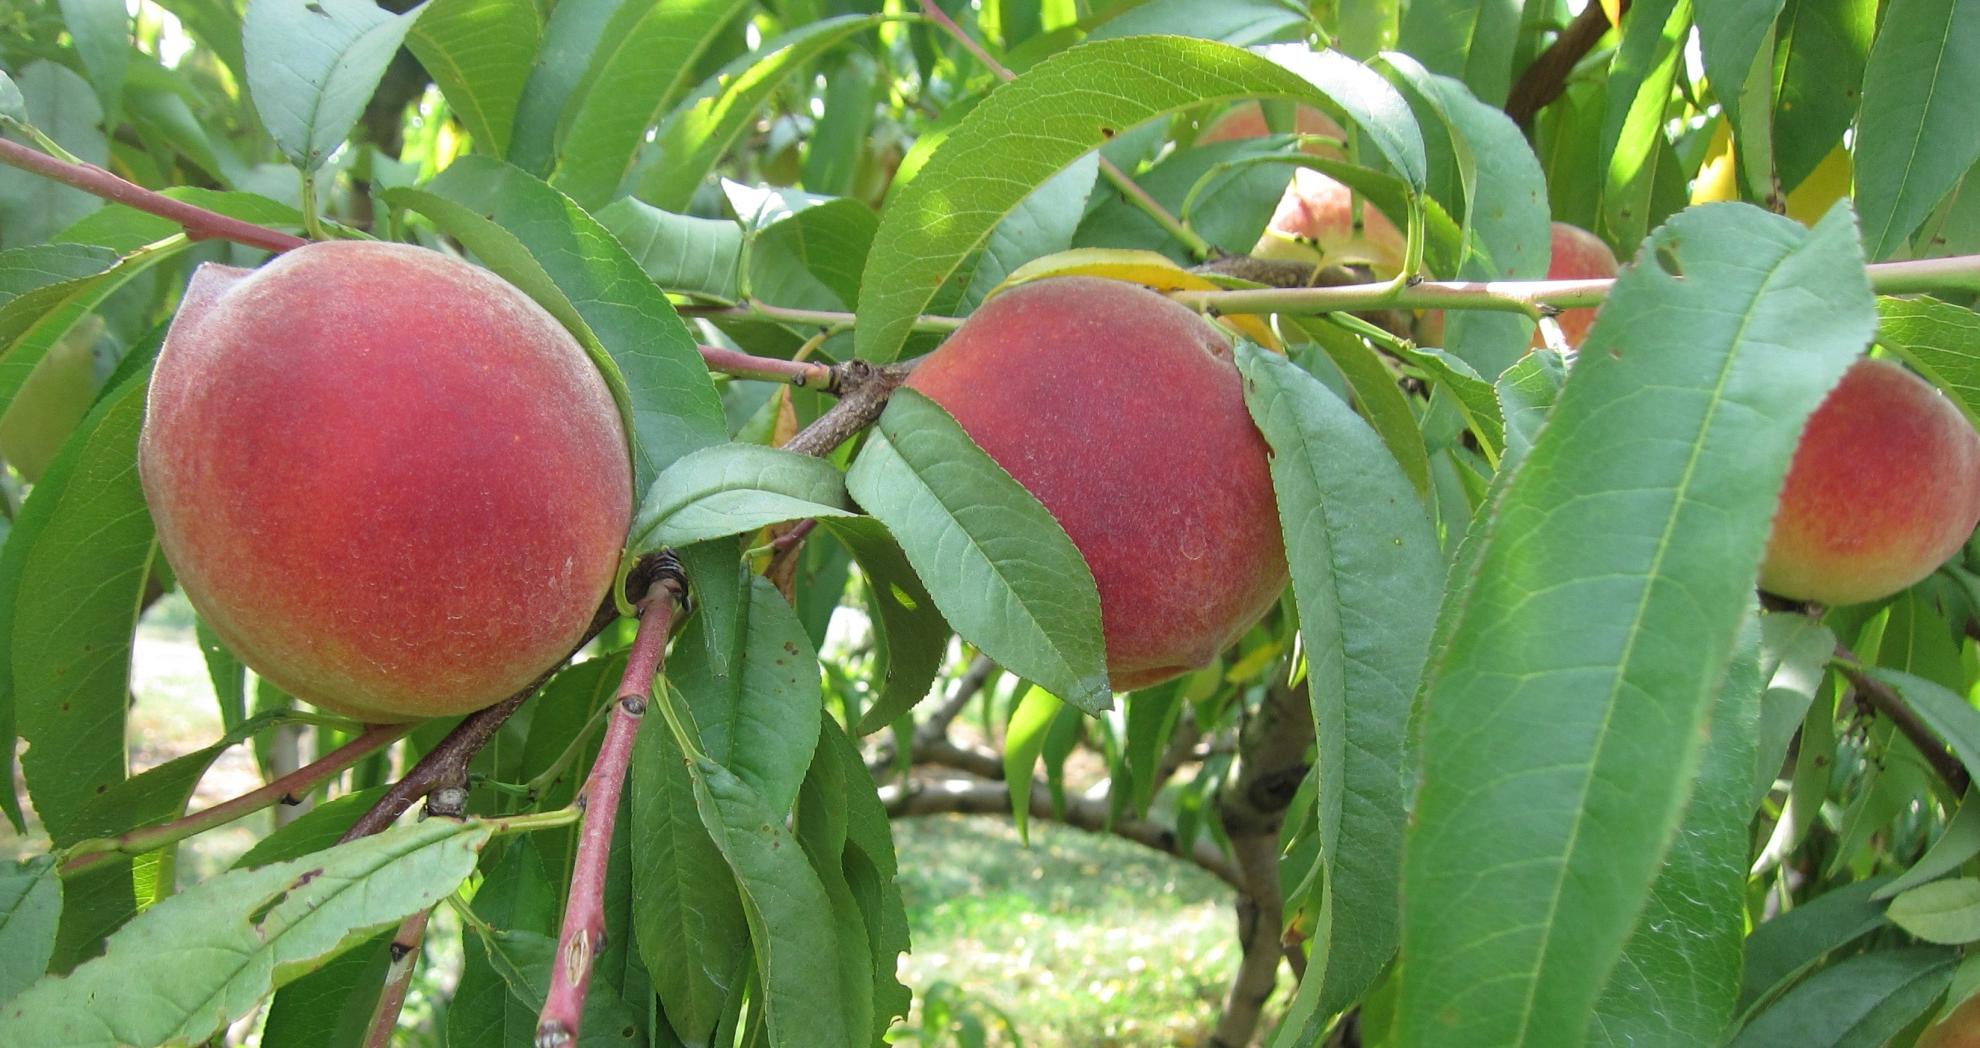 桃子县的遗产:我们把桃子种植在乔治亚州